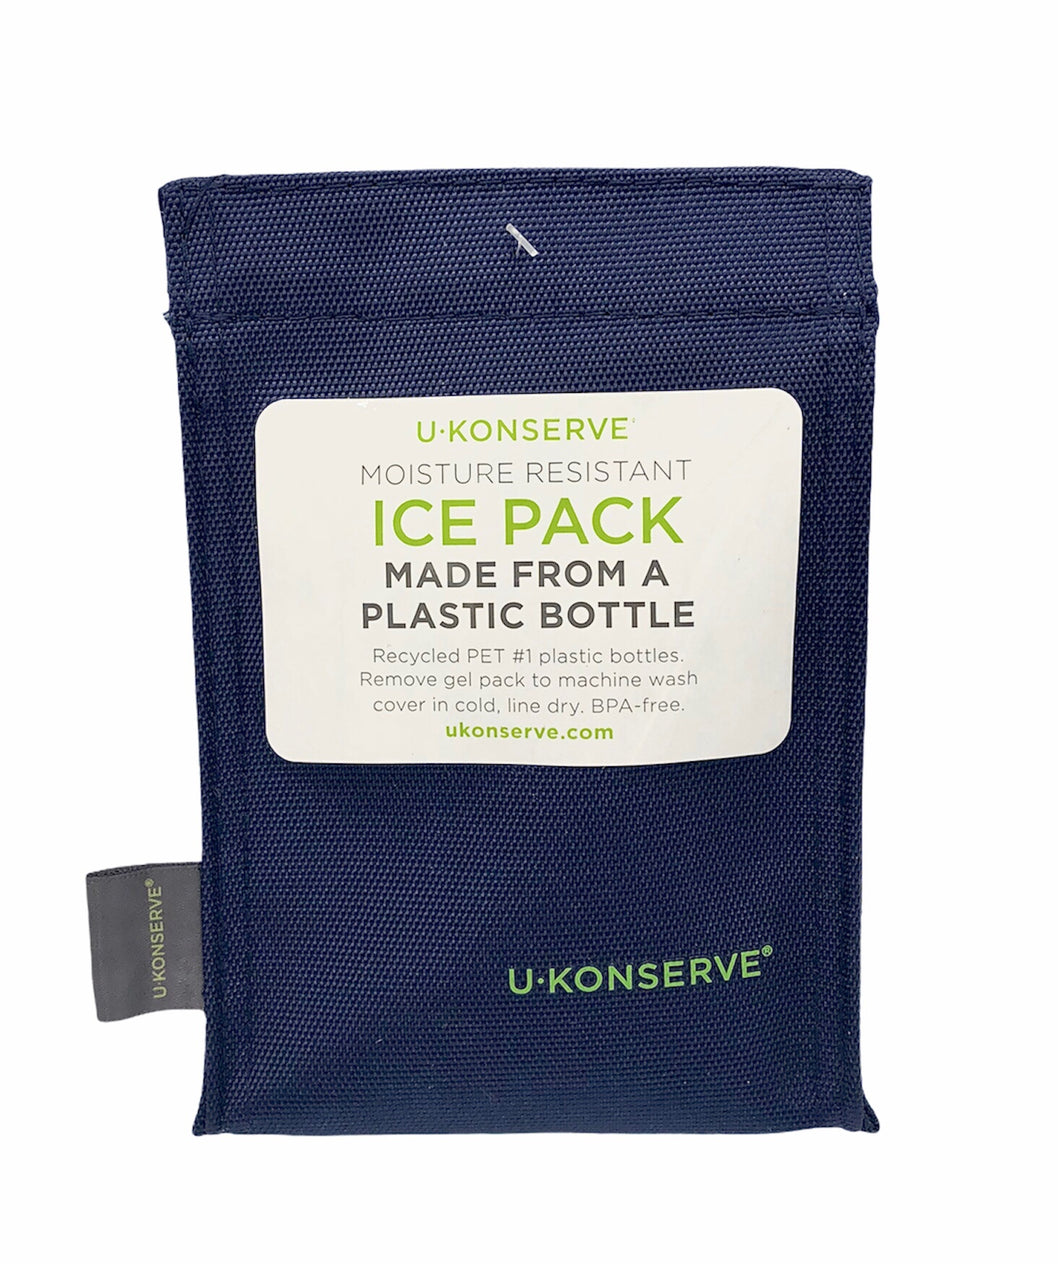 U-Konserve Ice Pack